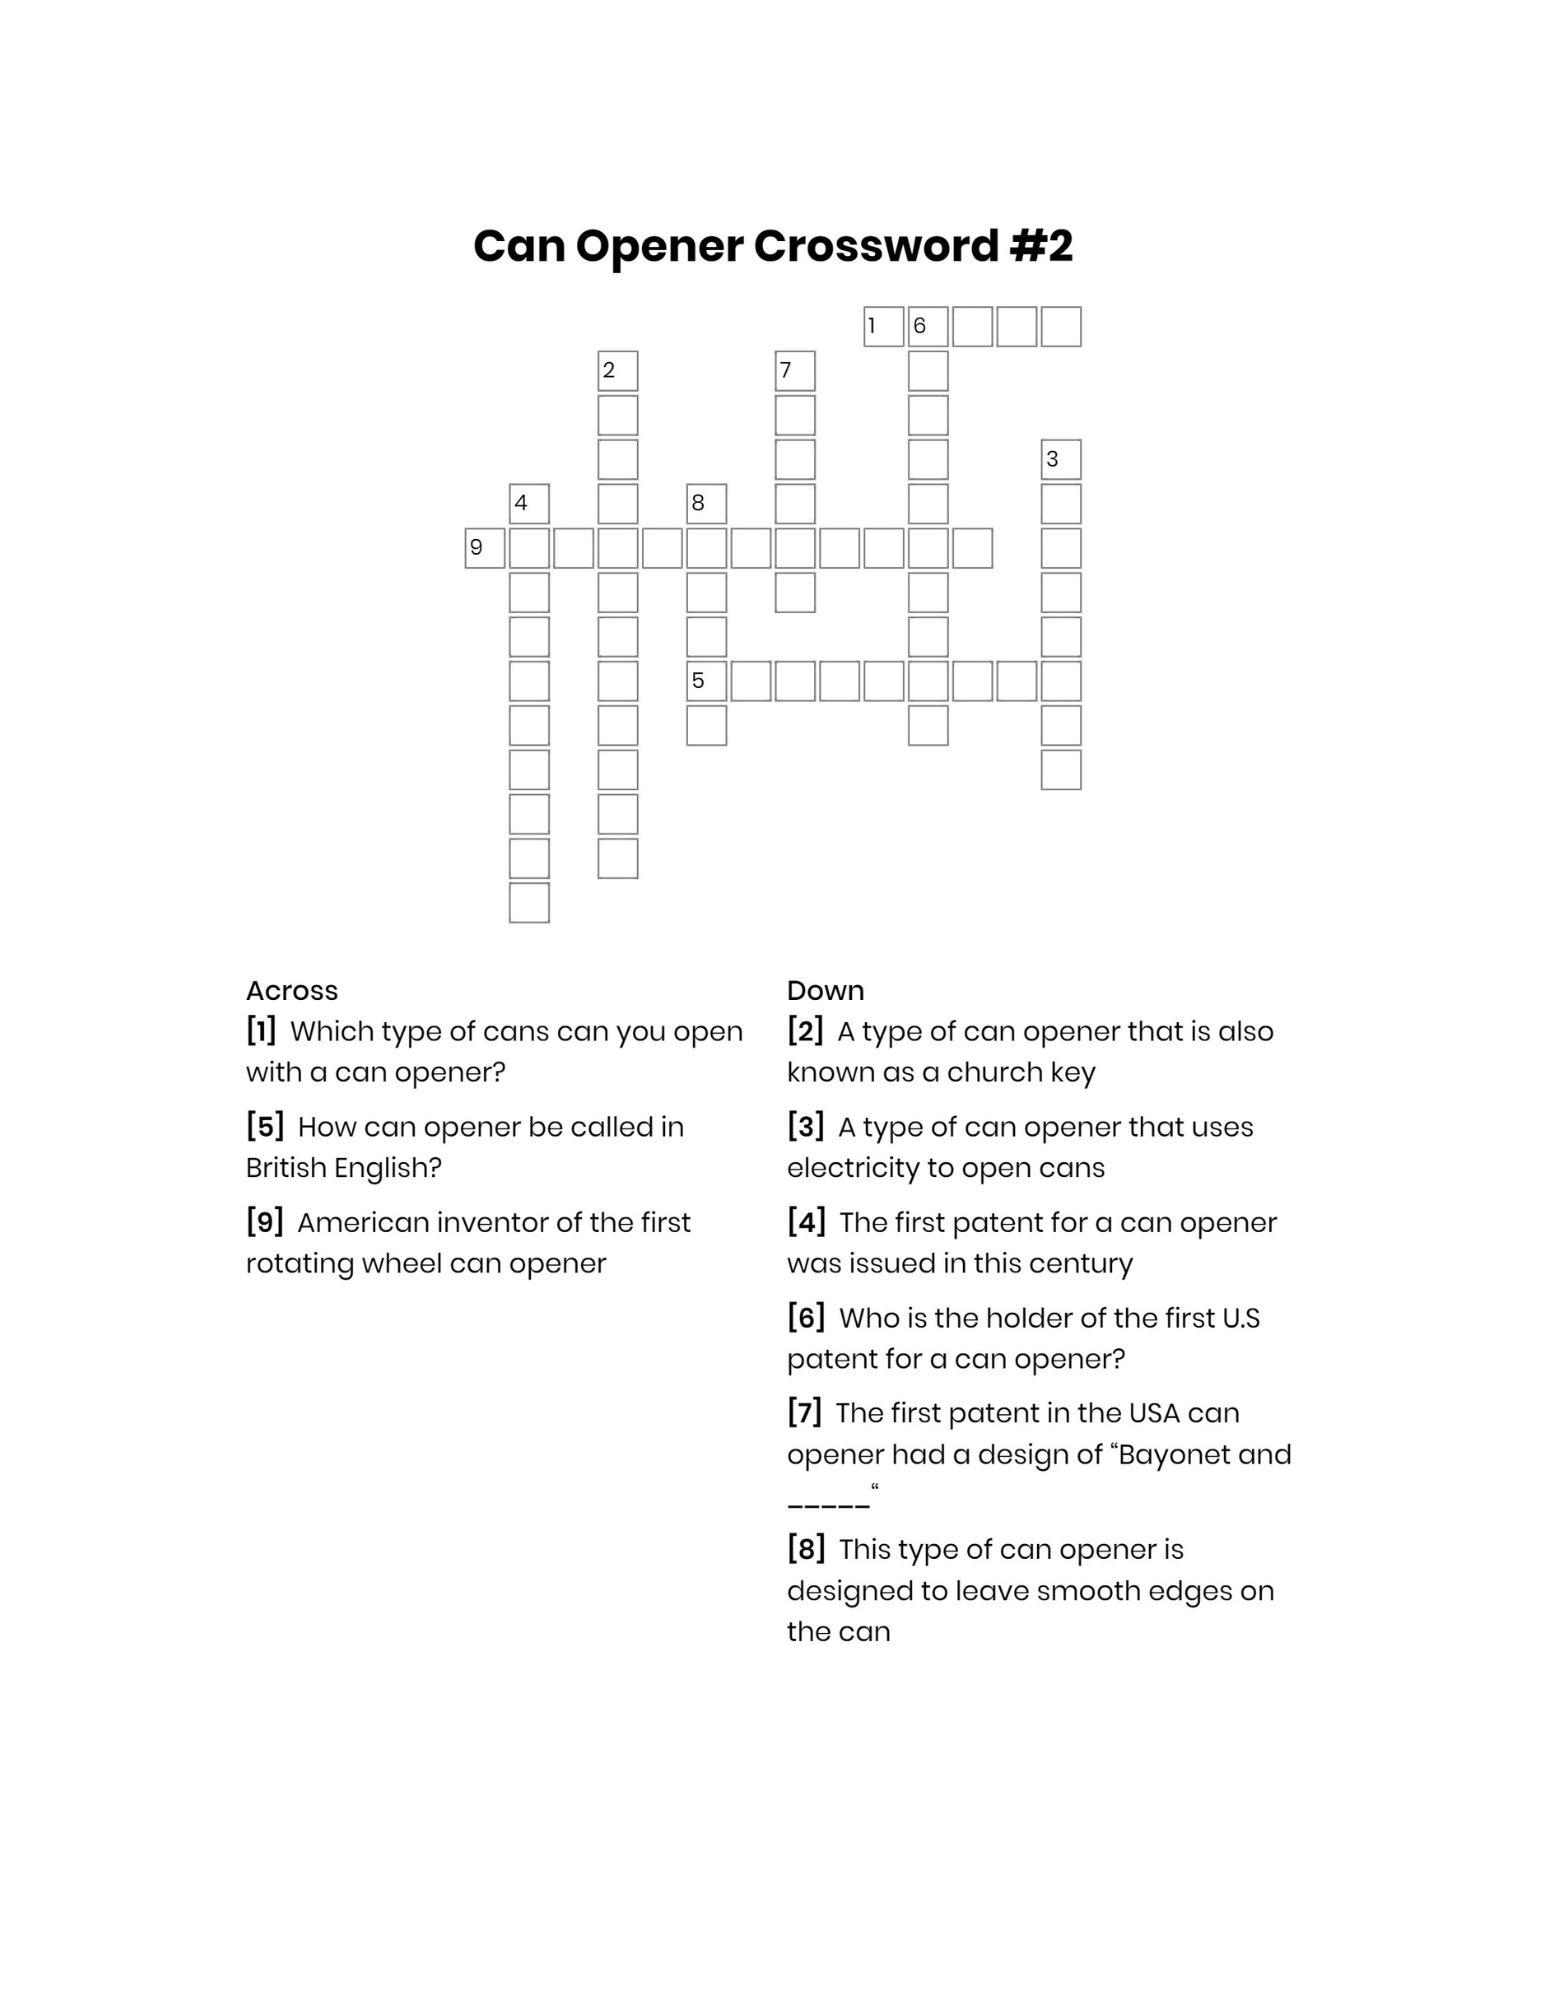 Can opener crossword #2